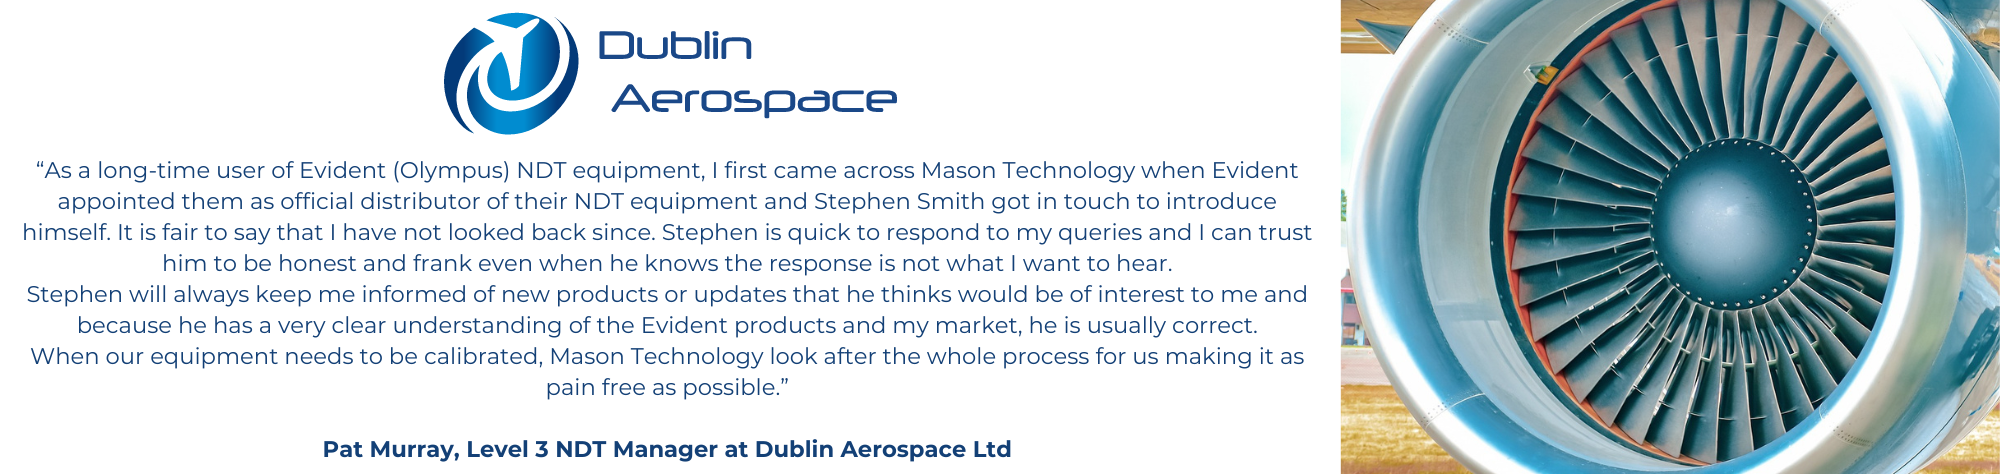 Dublin Aerospace